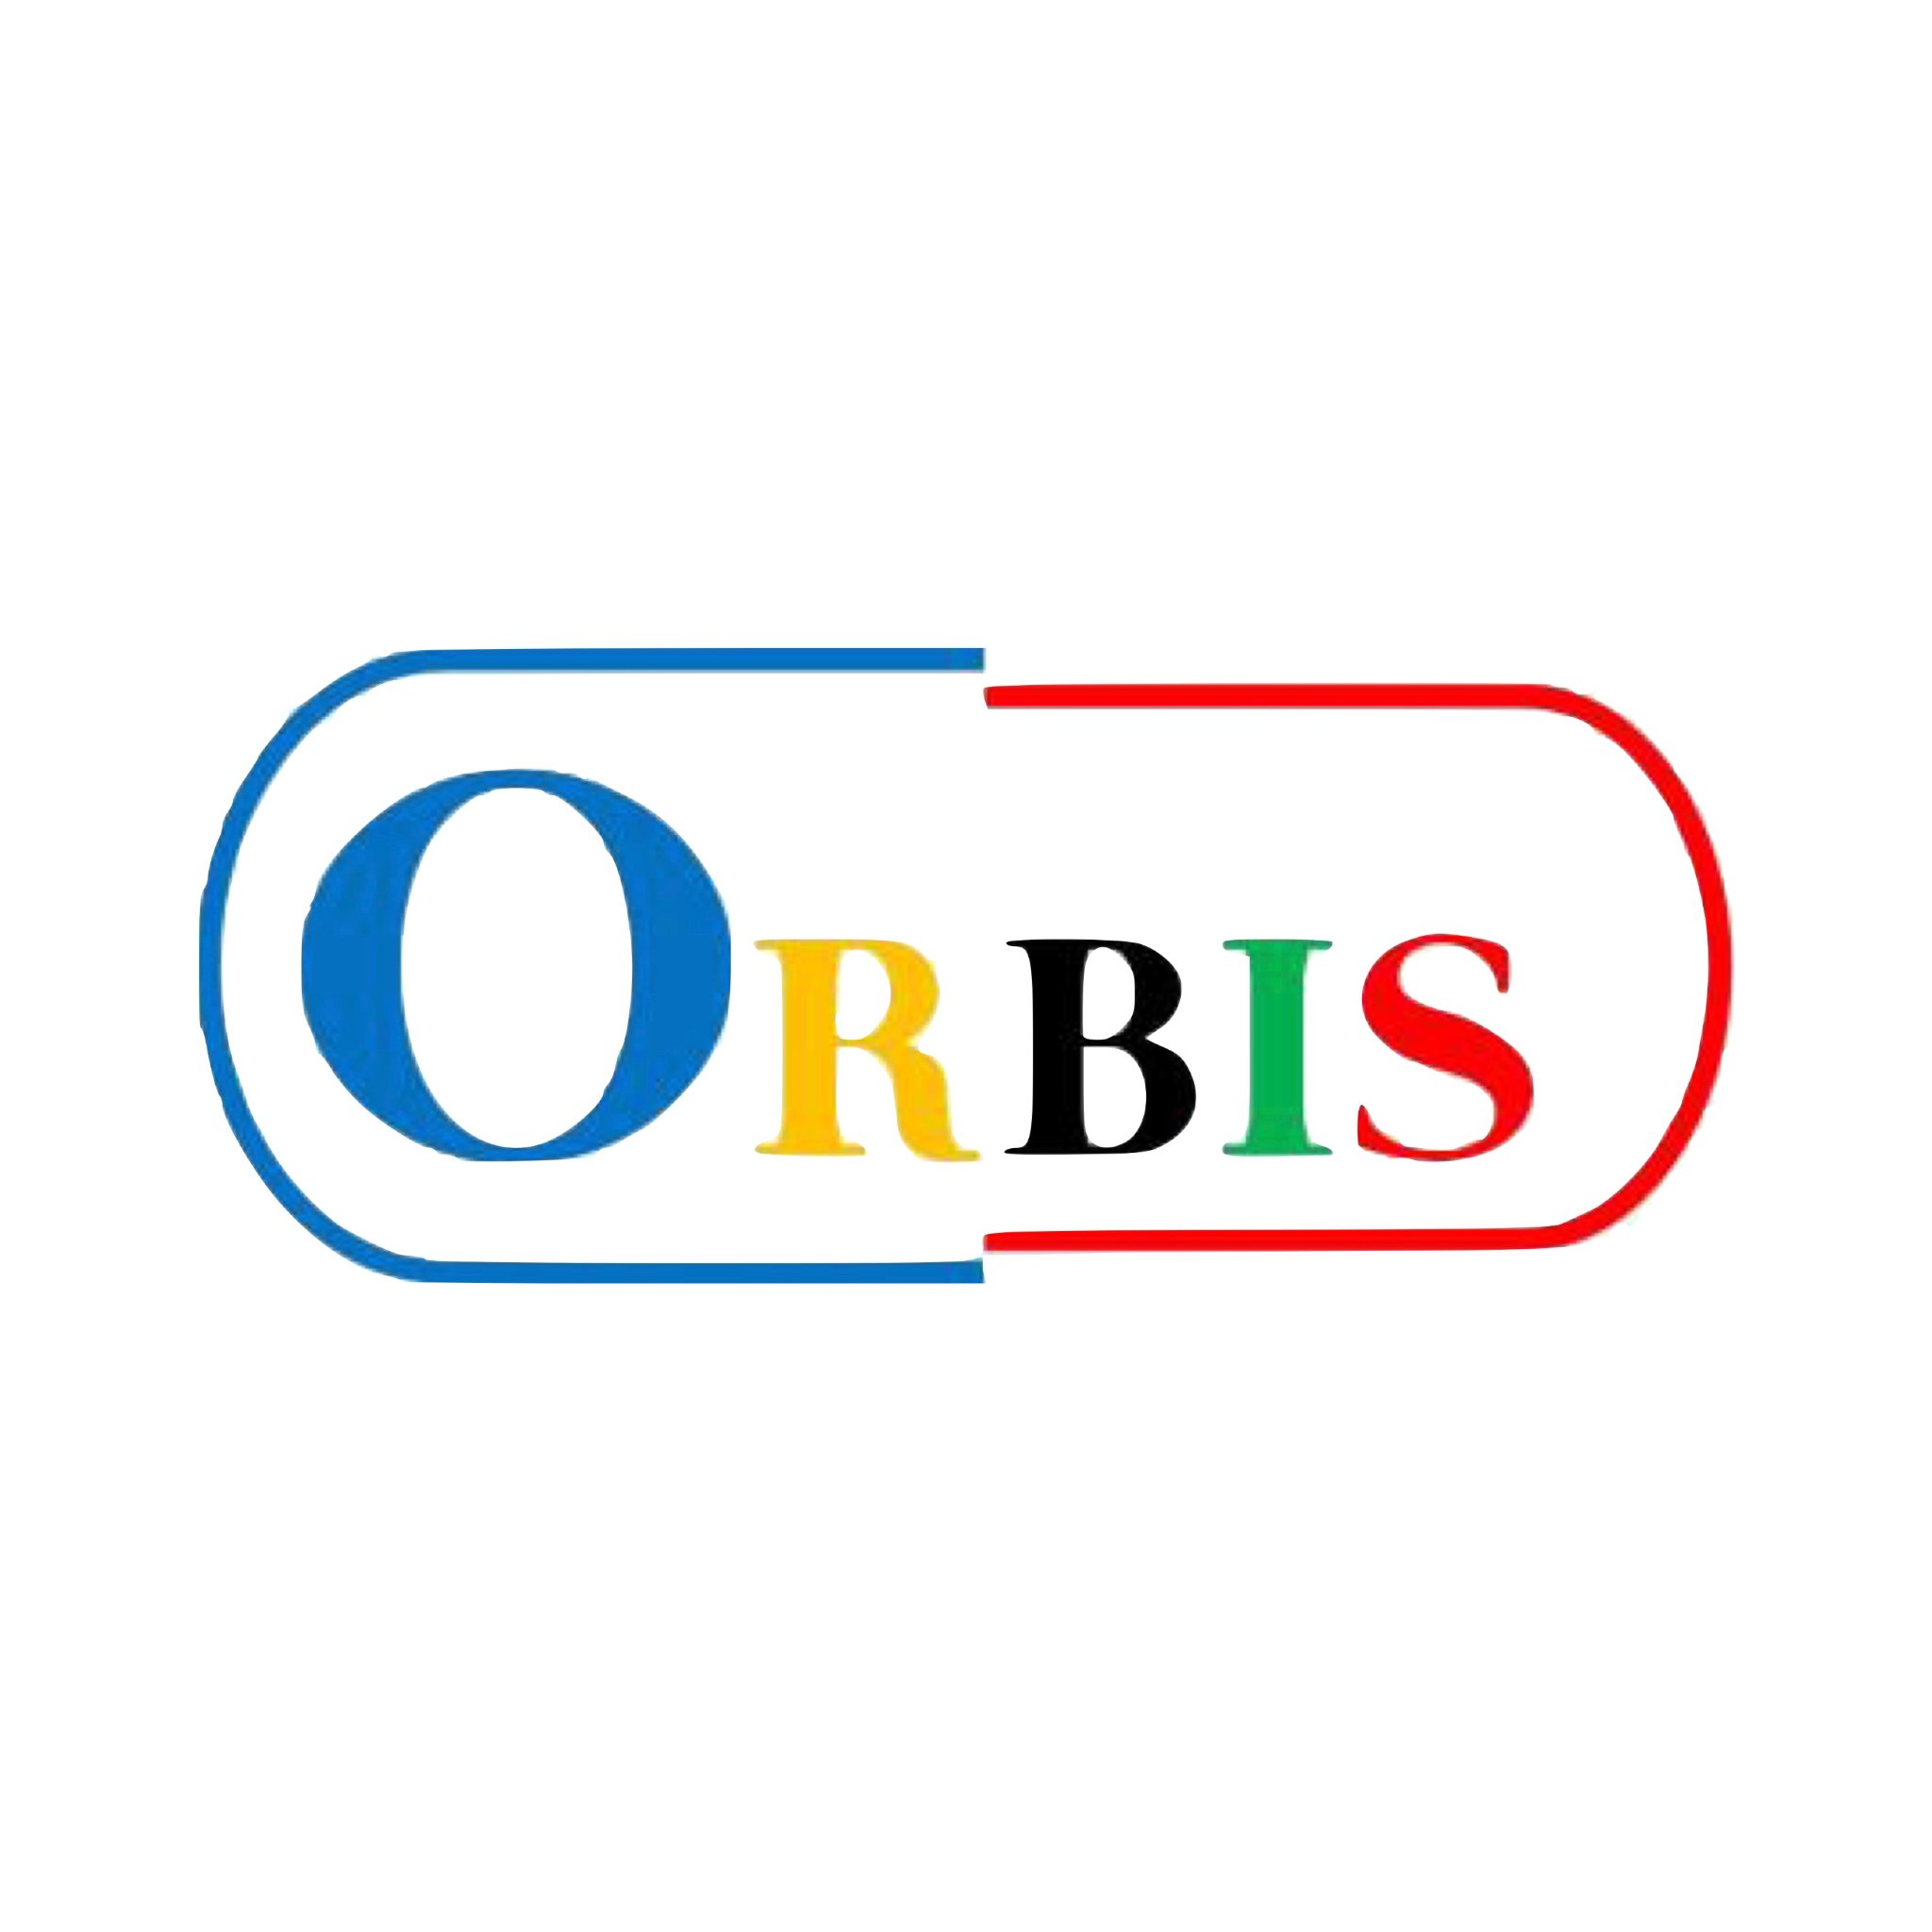 ORBISproject